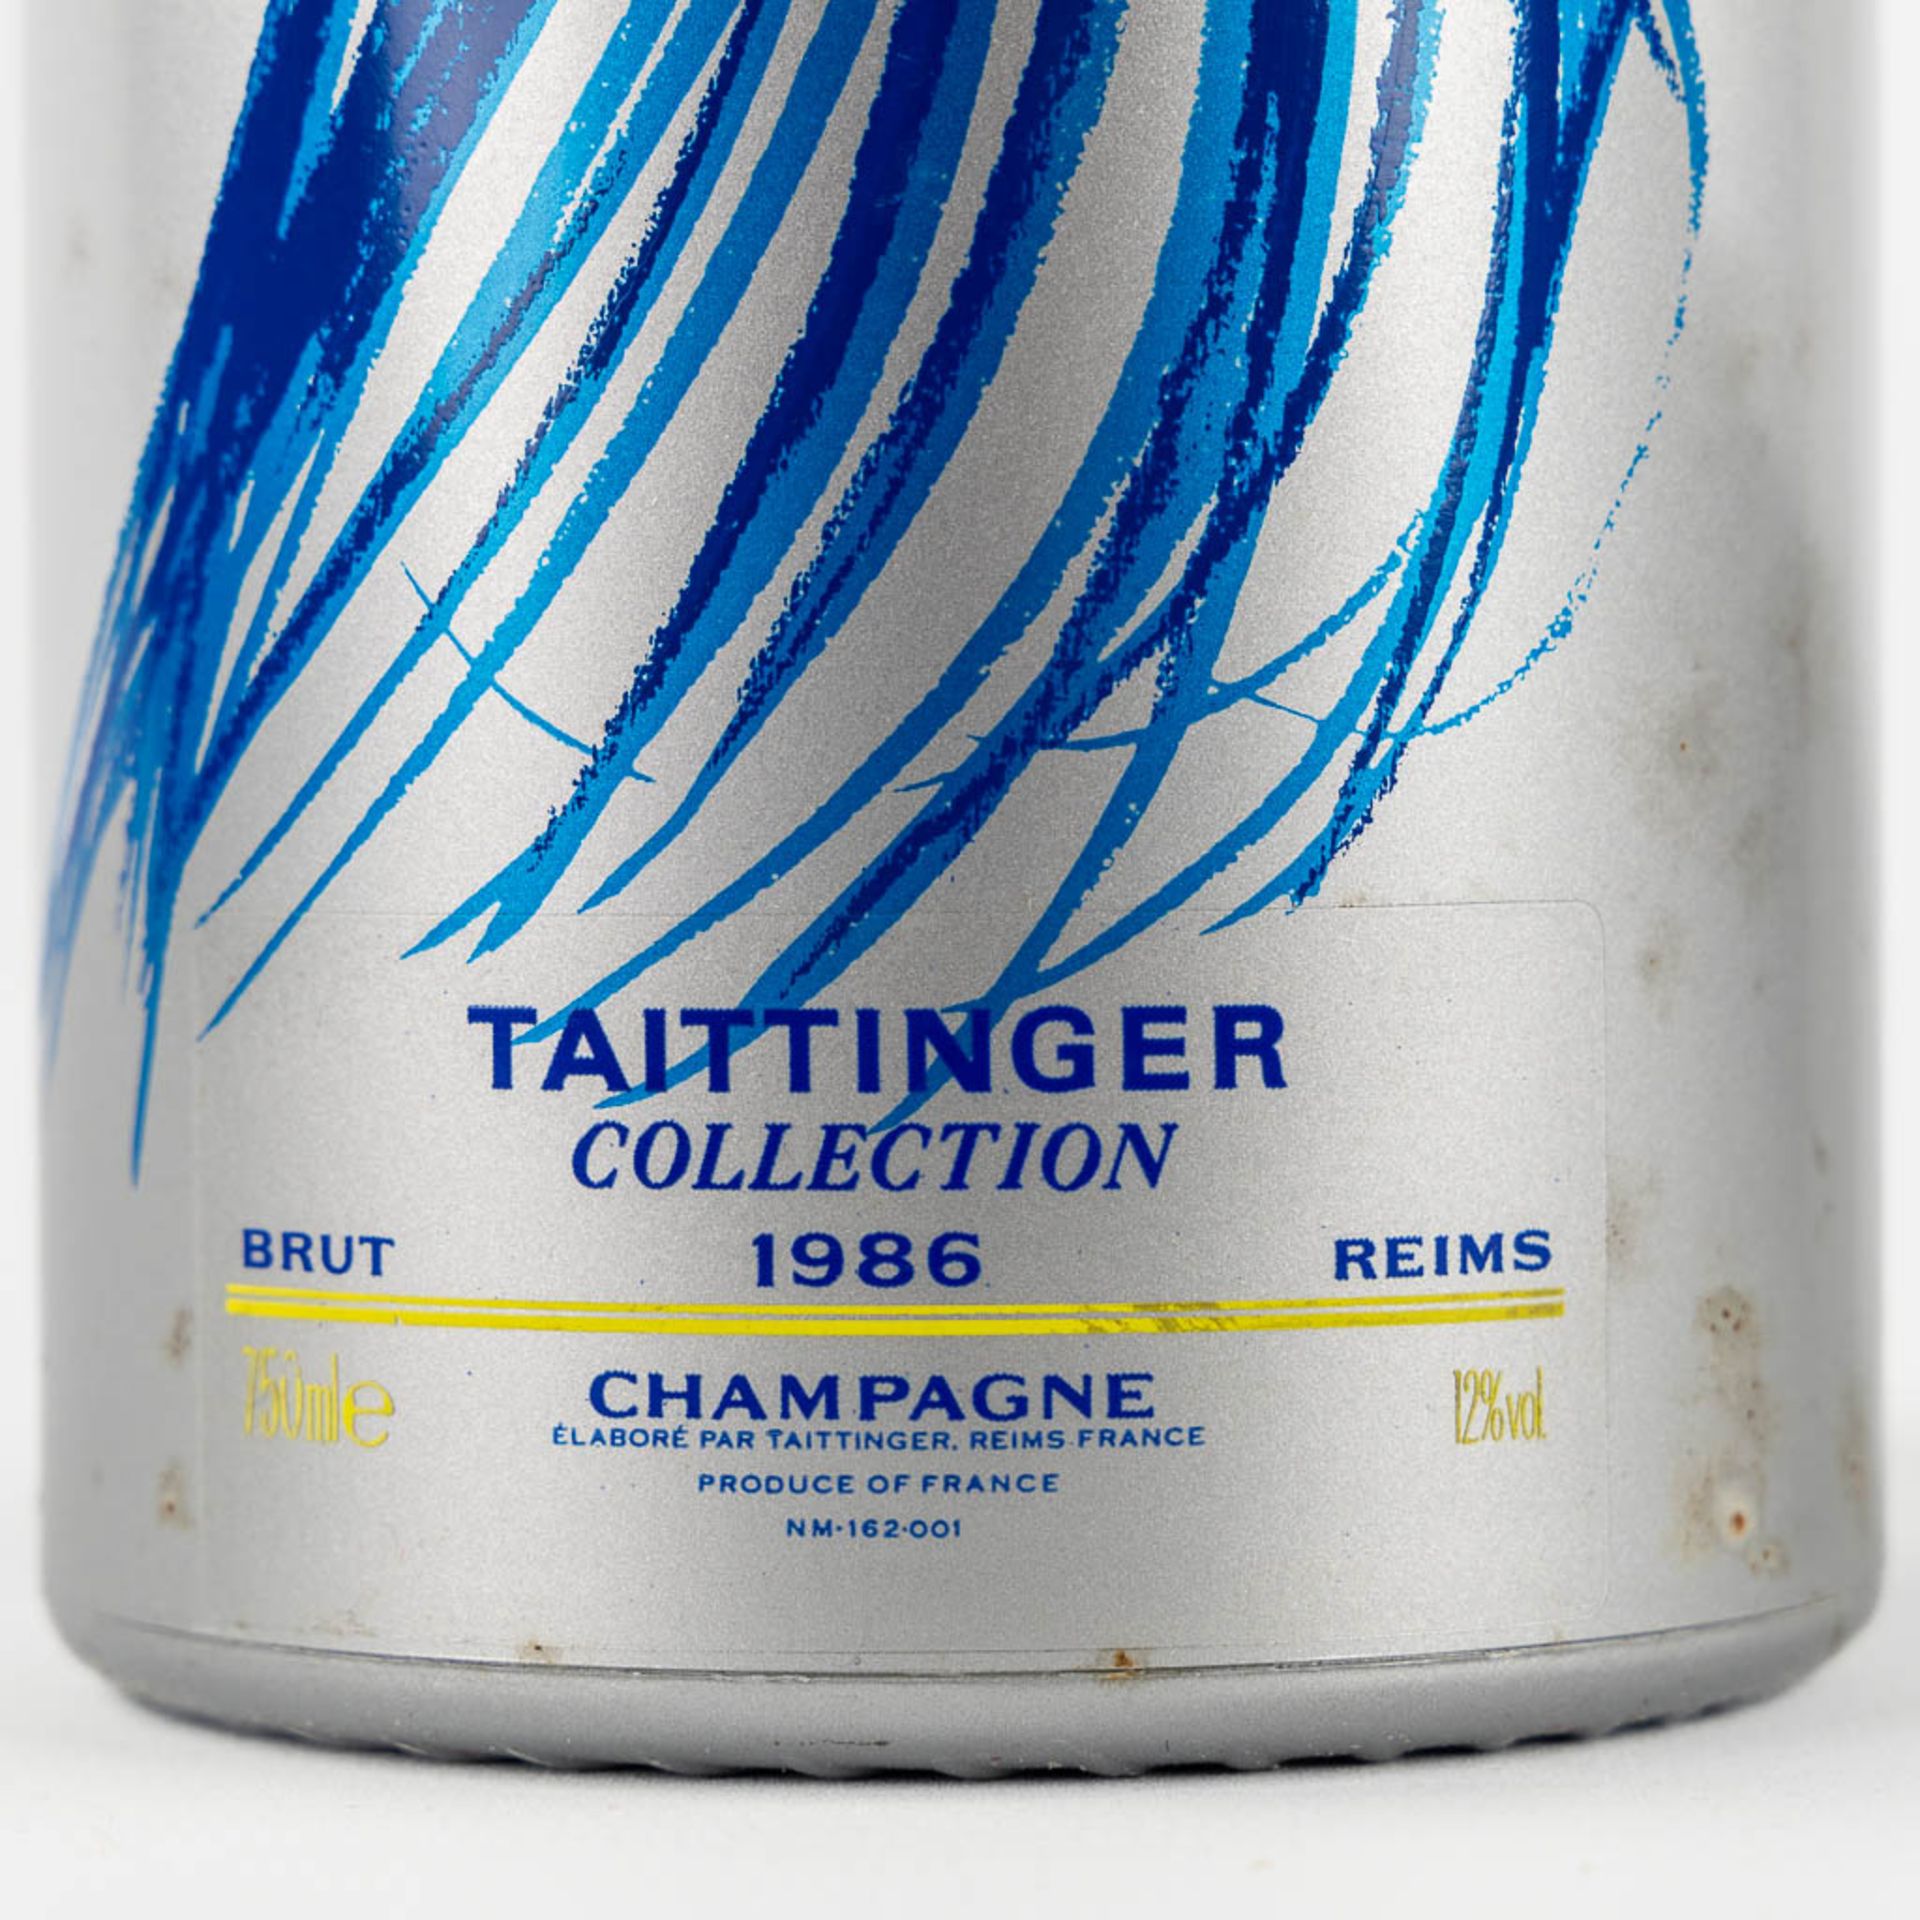 1986 Taittinger Collection Hans Hartung, Champagne - Bild 2 aus 3